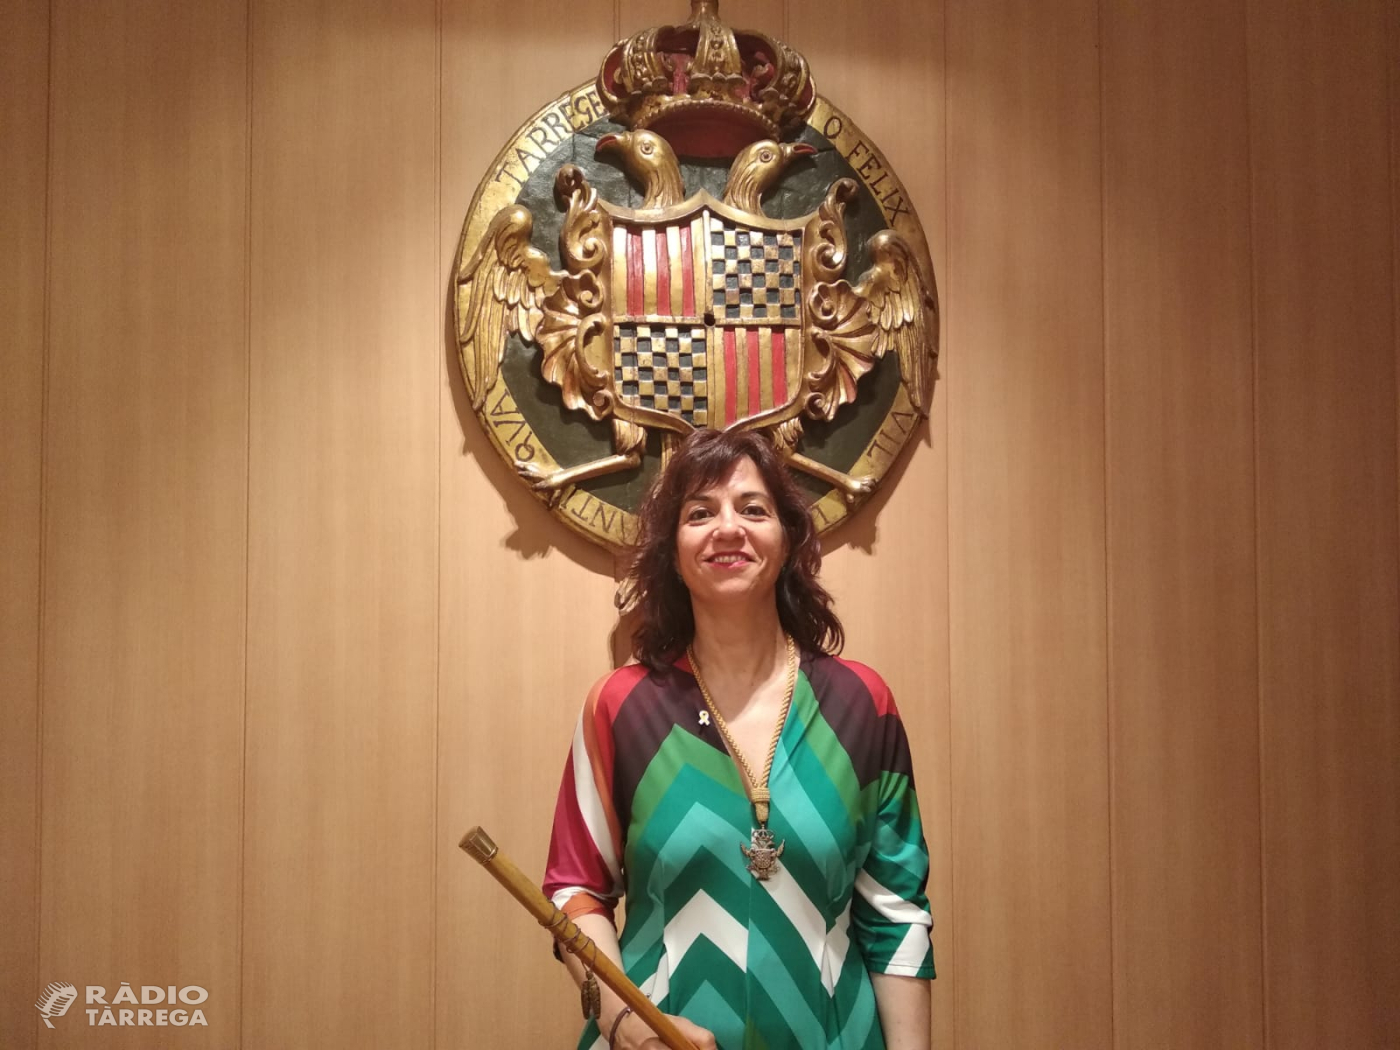 Maria Alba Pijuan Vallverdú és proclamada la nova alcaldessa de Tàrrega